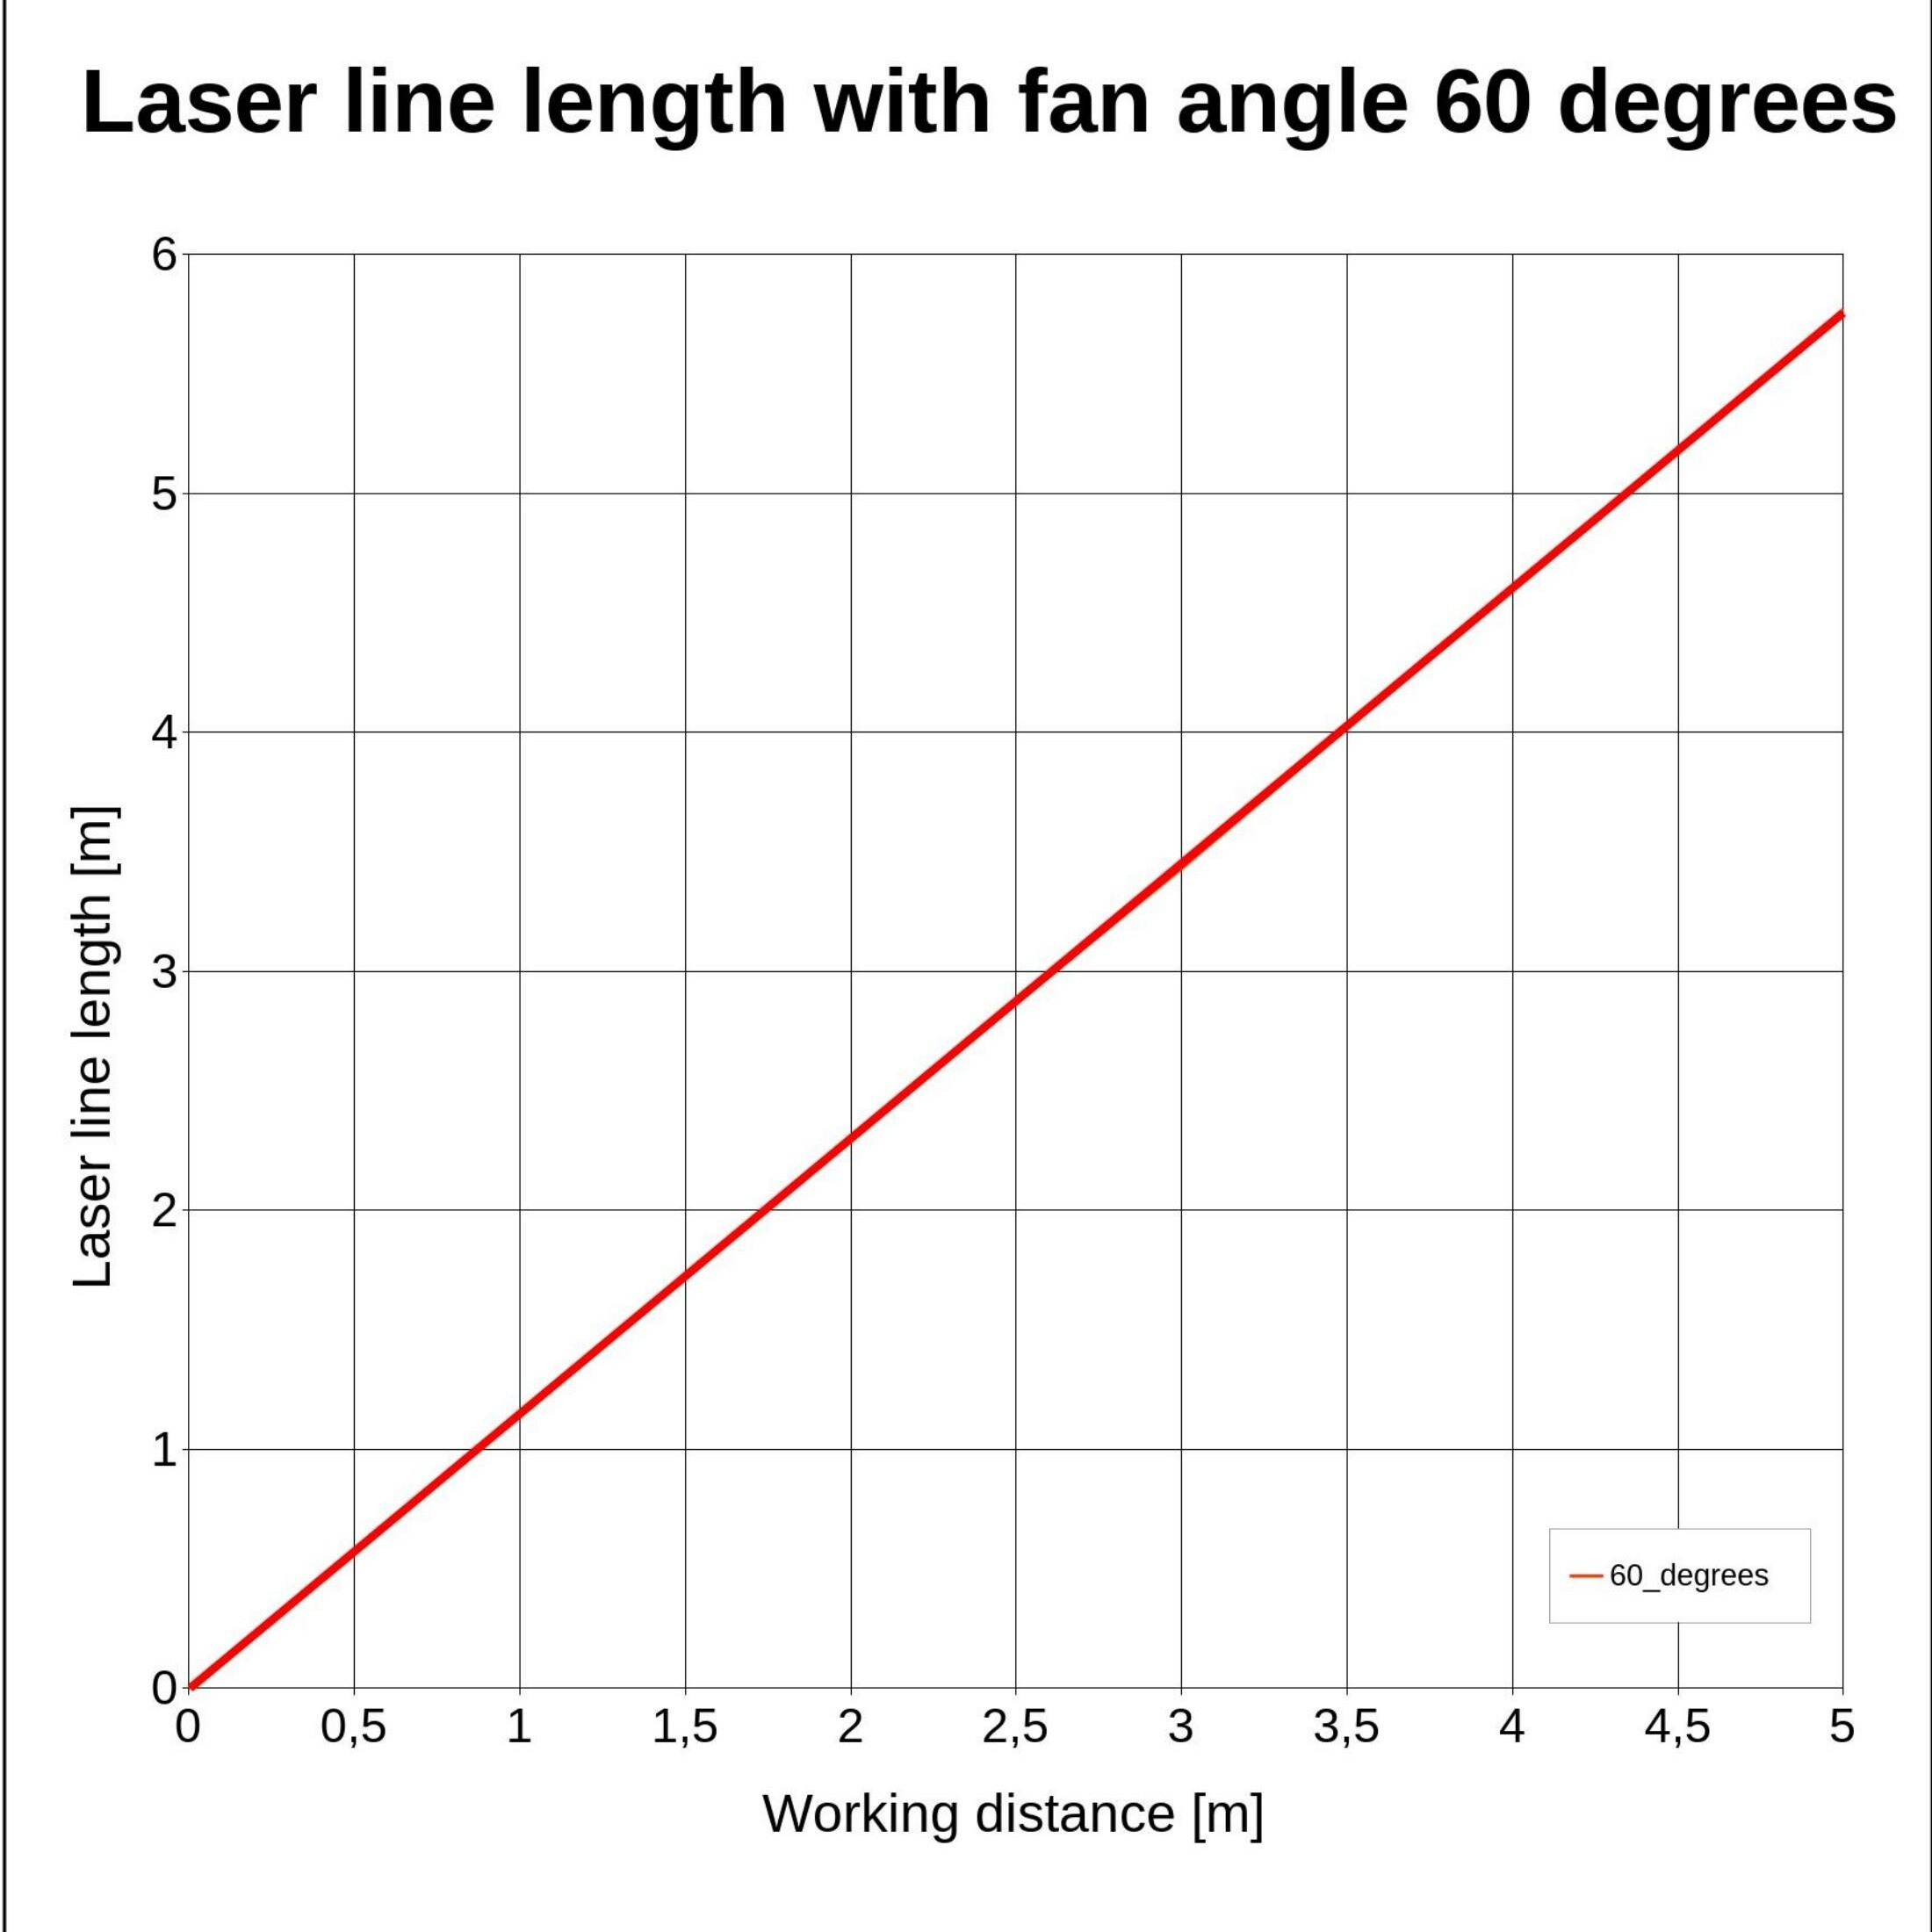 Laserfuchs Laser LFL650-5-4.5(15x67)60